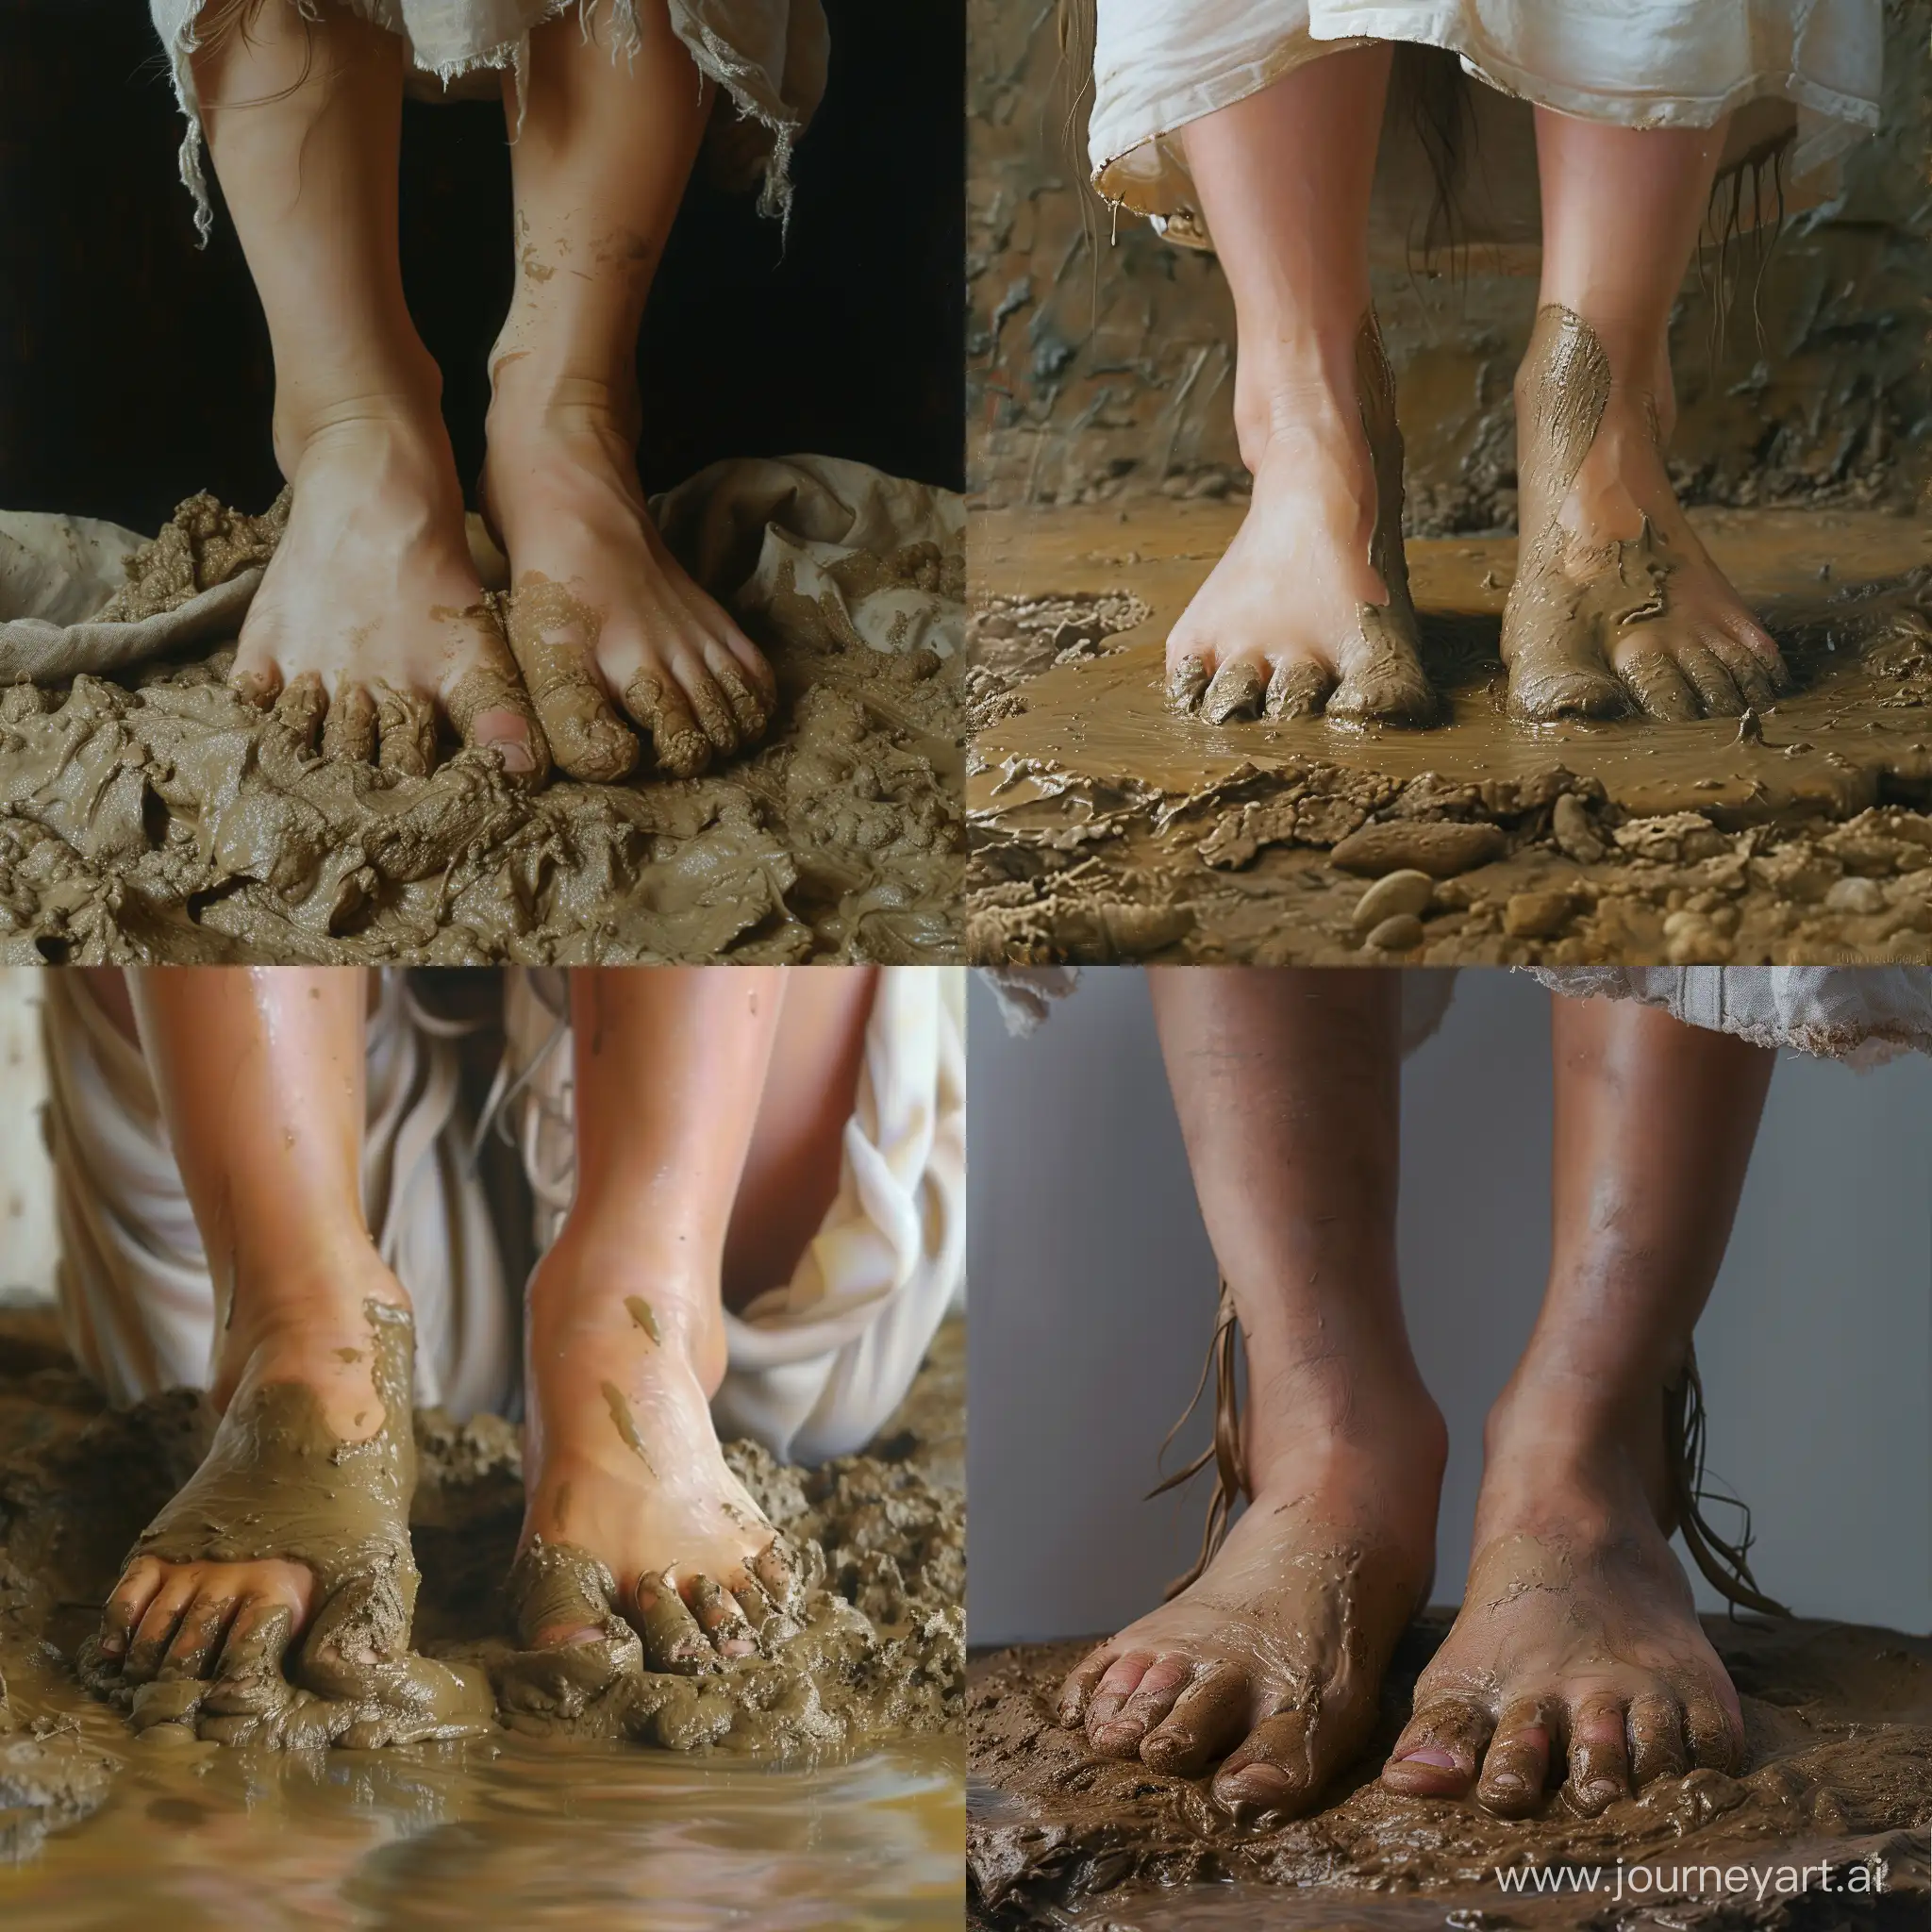 Девушка своими ногами (ступнями) месит грязь. Реалистичное изображение, ступни крупным планом 